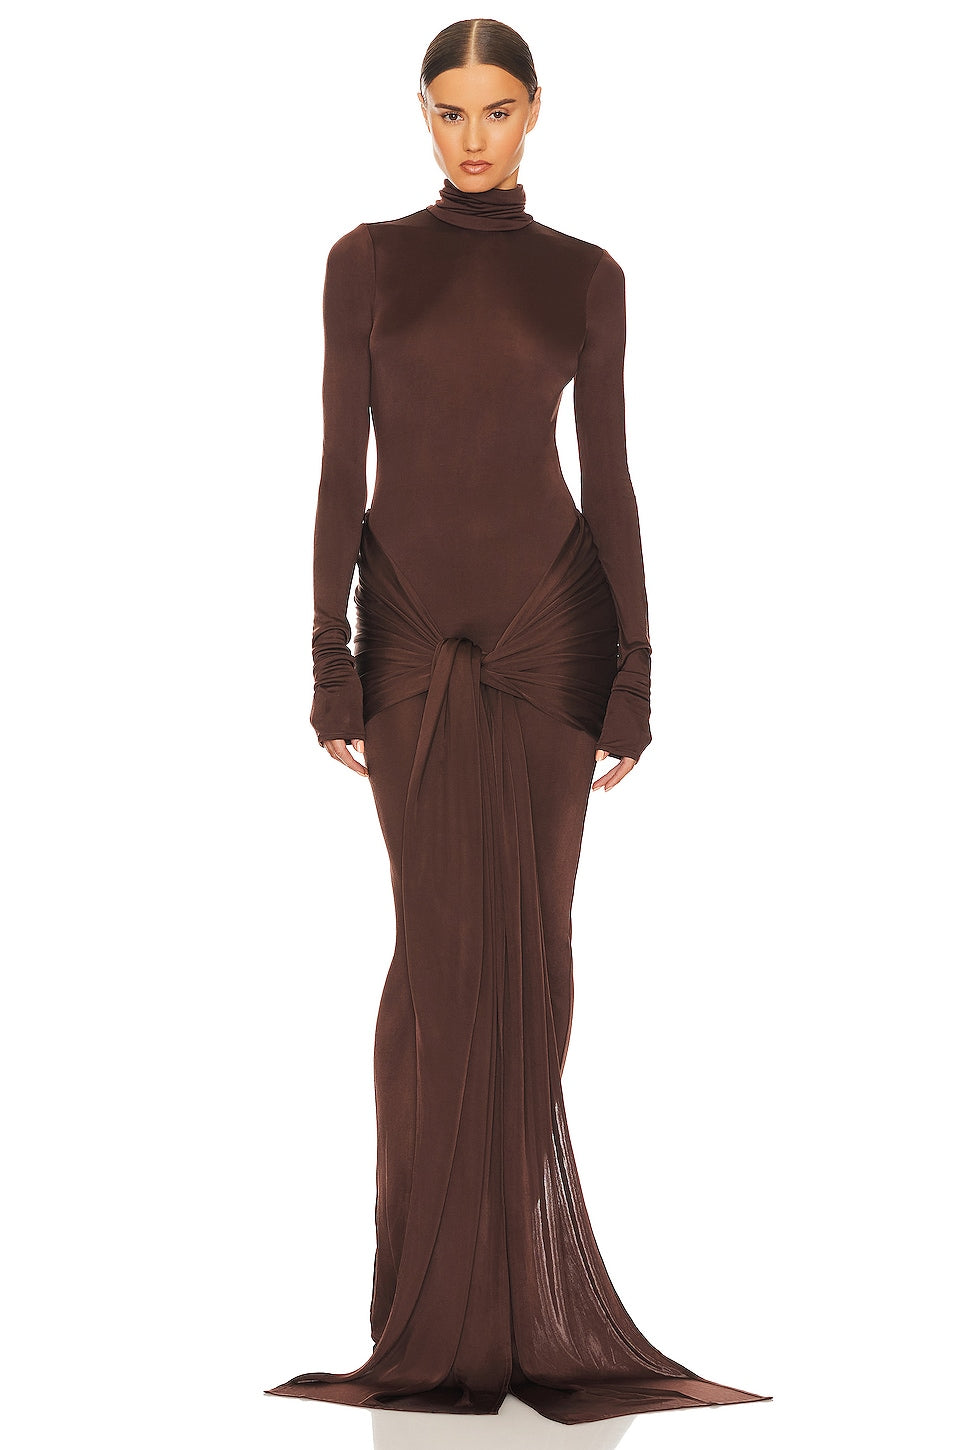 brown sarong dress